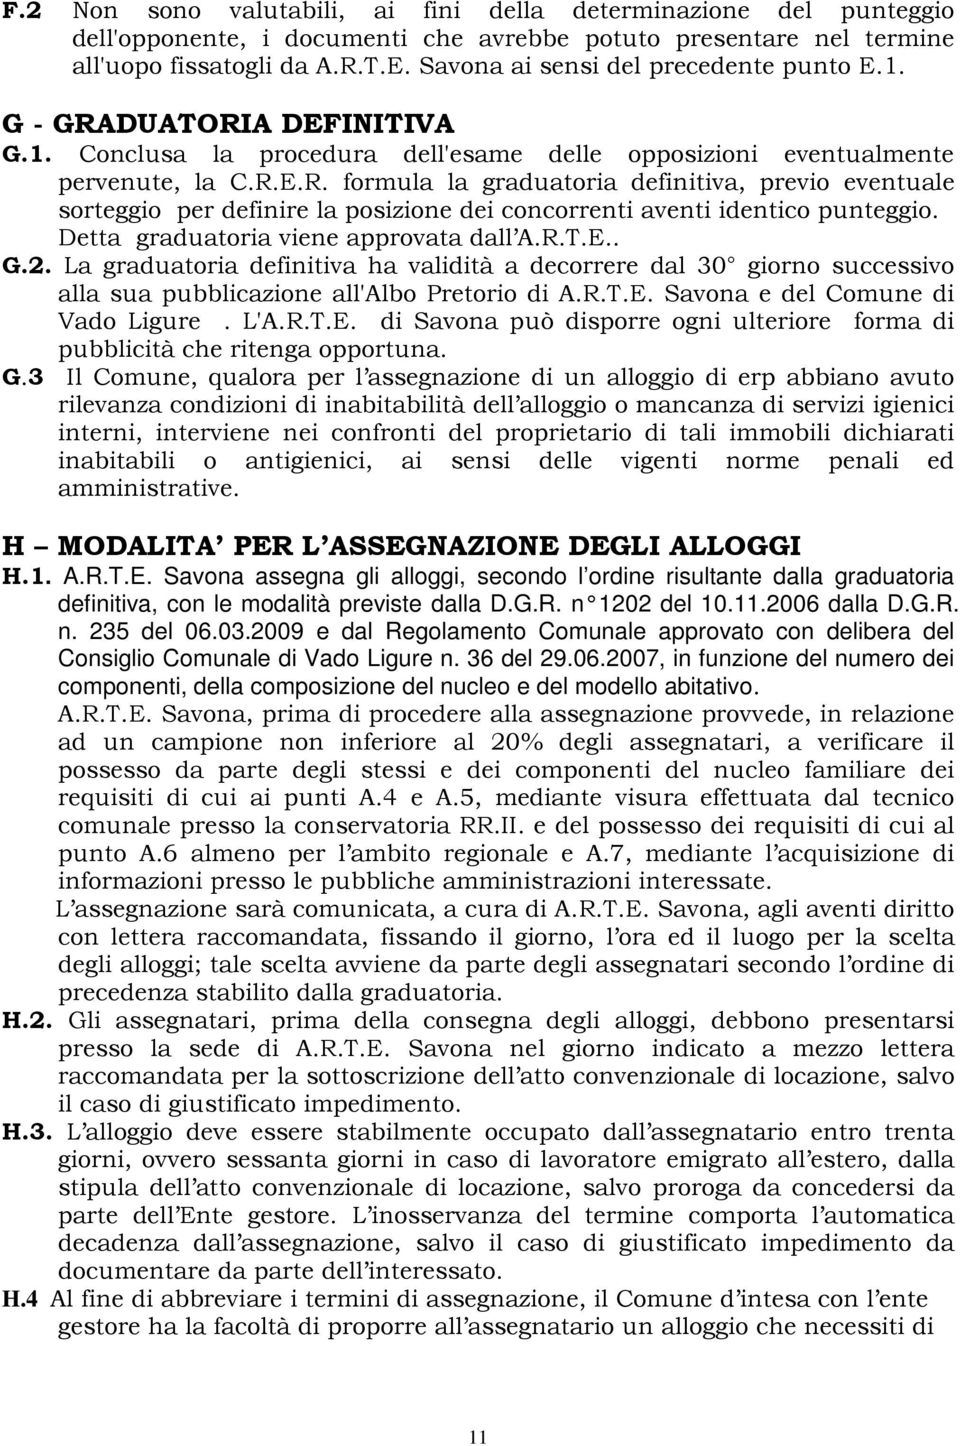 Detta graduatoria viene approvata dall A.R.T.E.. G.2. La graduatoria definitiva ha validità a decorrere dal 30 giorno successivo alla sua pubblicazione all'albo Pretorio di A.R.T.E. Savona e del Comune di Vado Ligure.